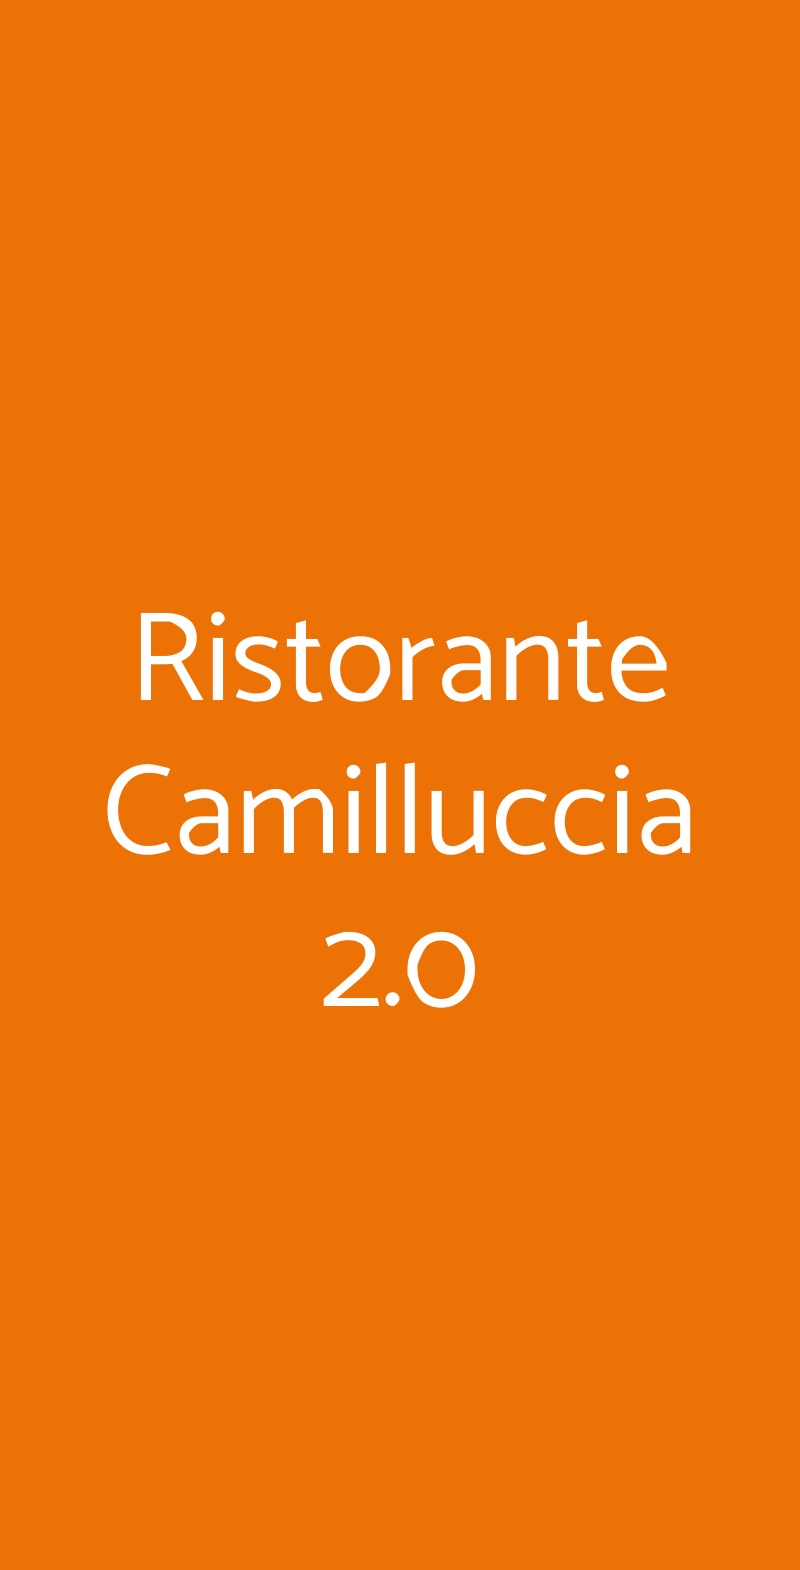 Ristorante Camilluccia 2.0 Roma menù 1 pagina